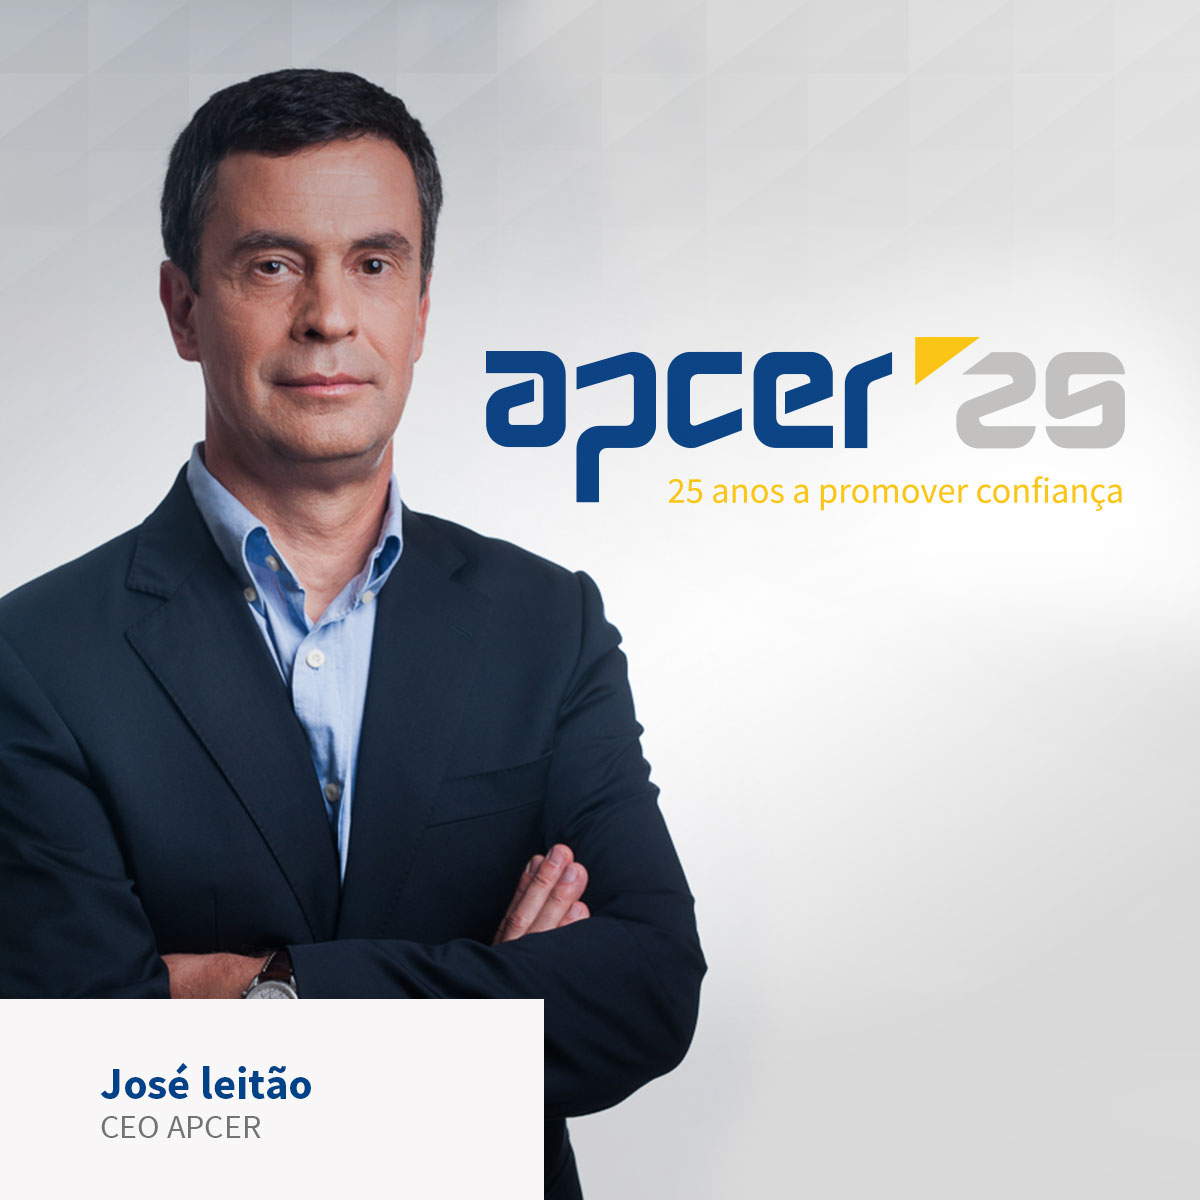 CEO APCER web